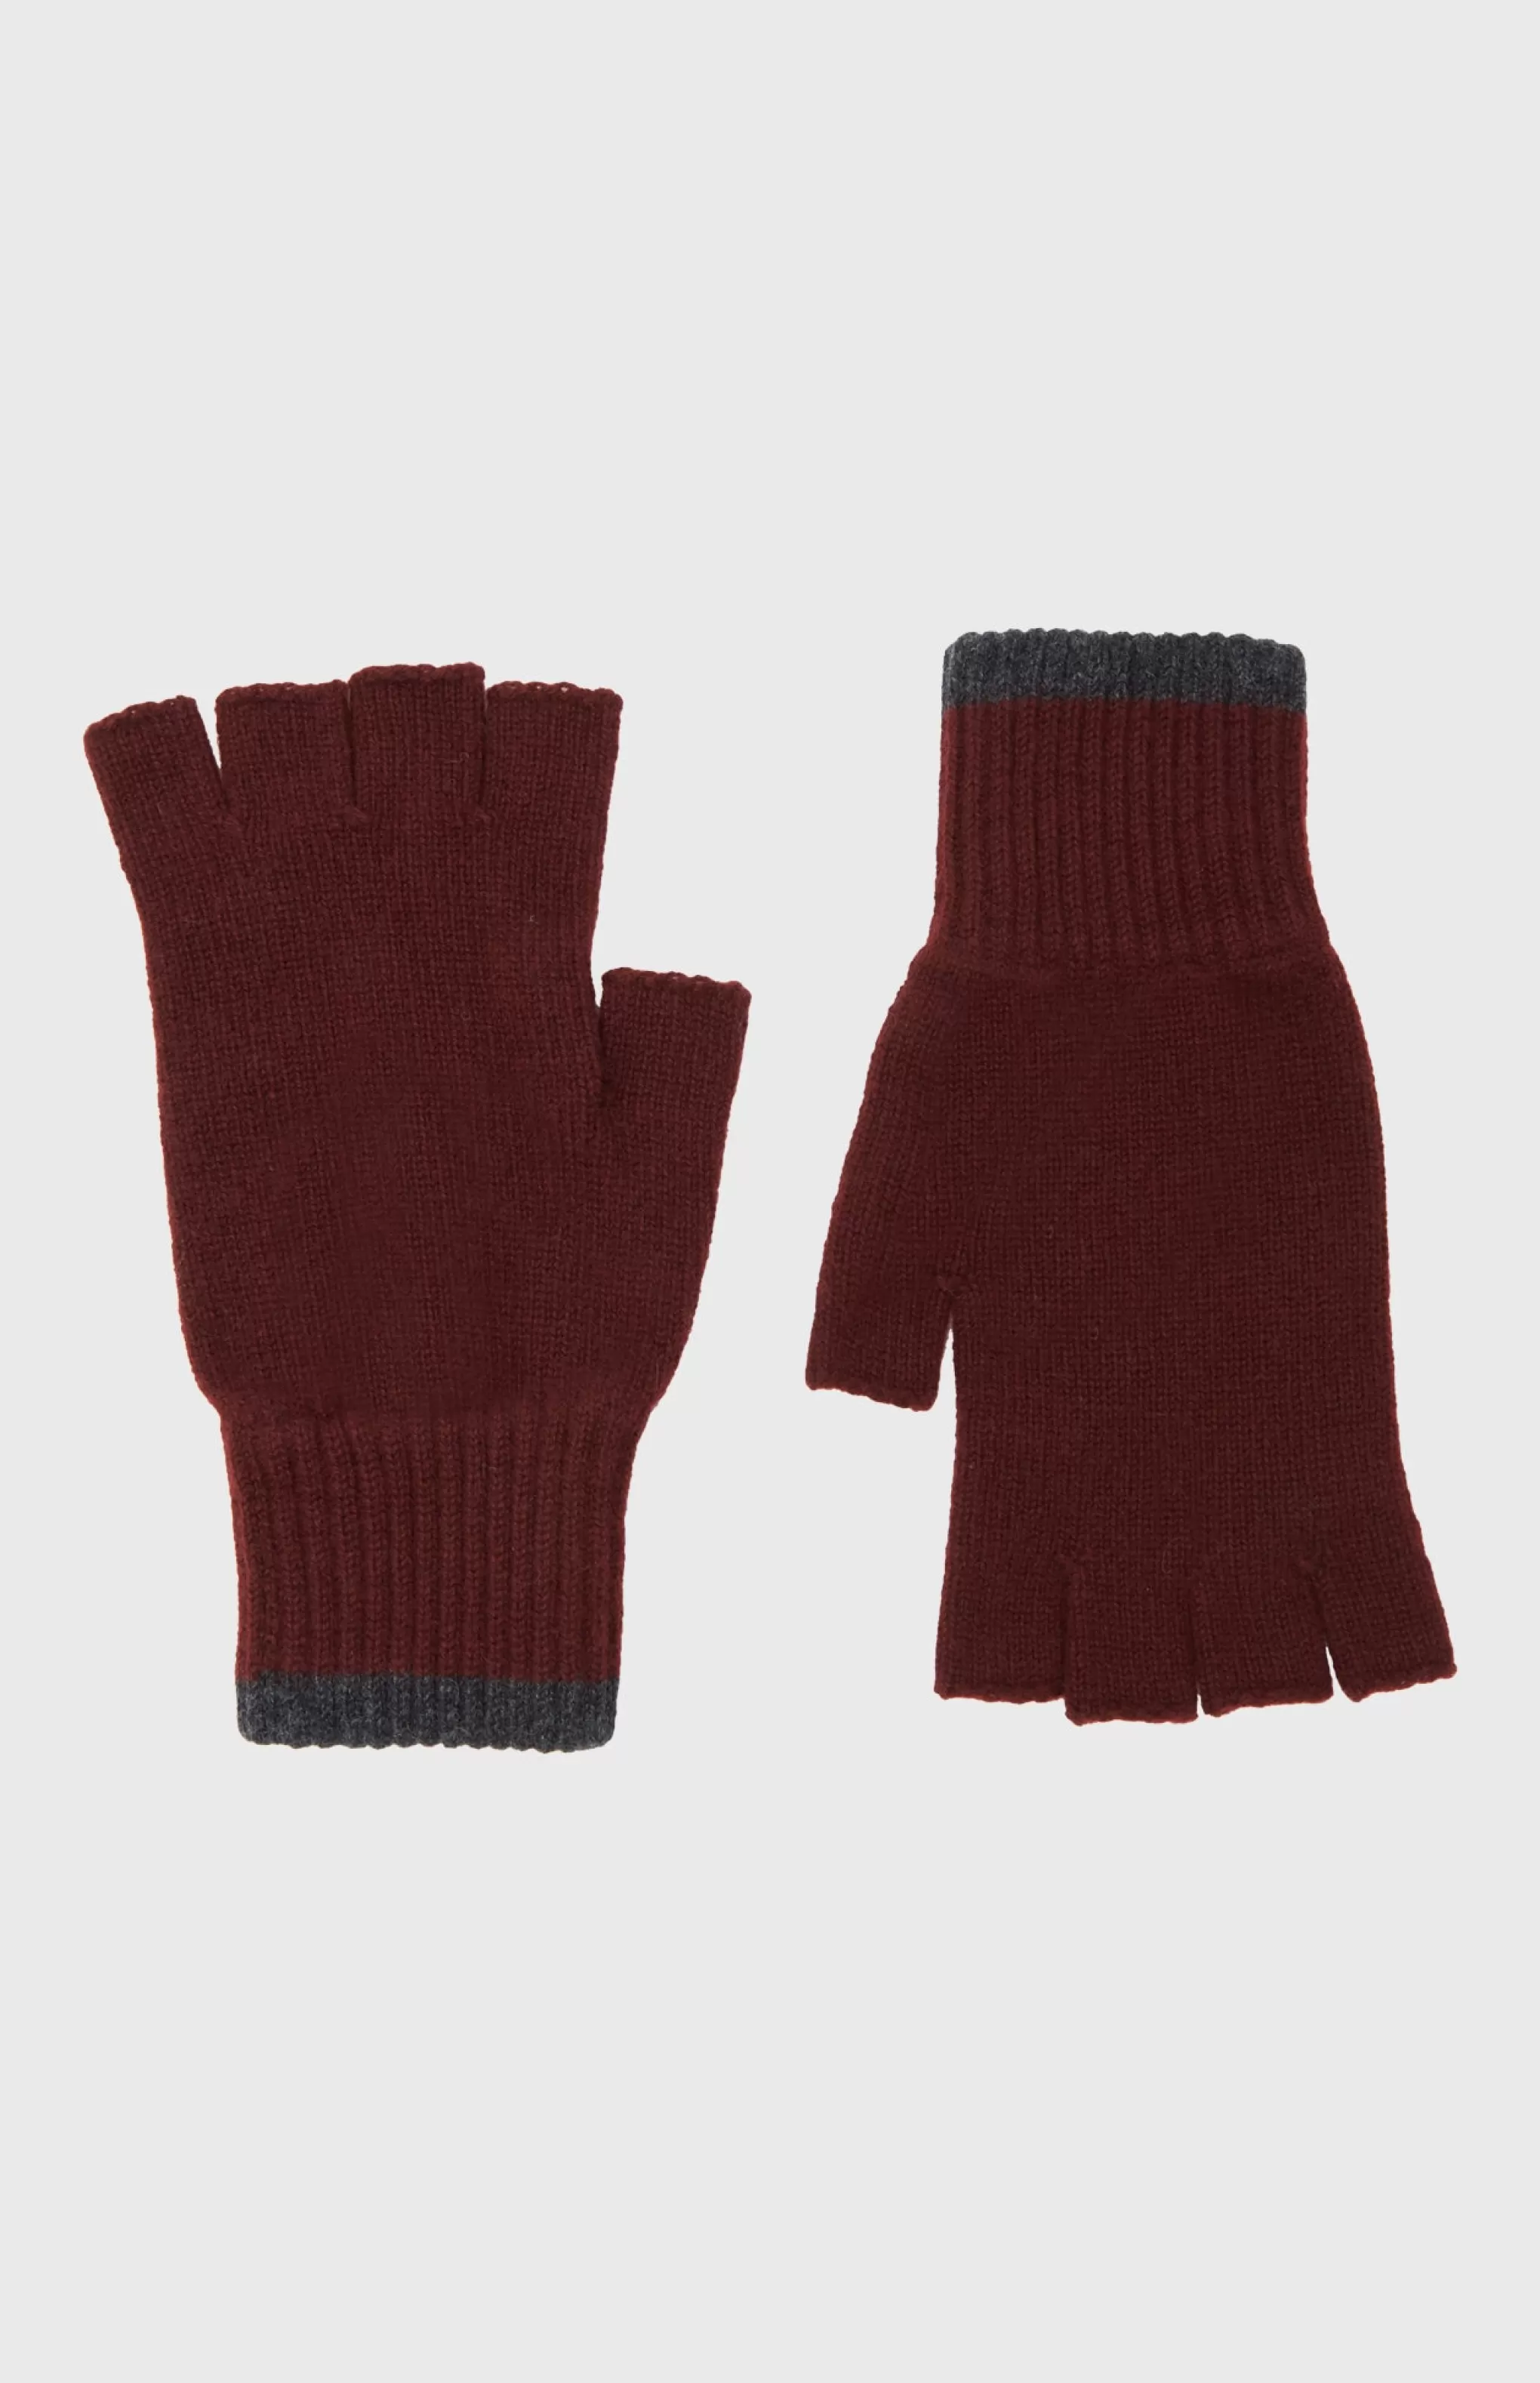 Discount Cashmere Fingerless Gloves Contrast Ribs In Dark Claret Men/Women Gloves